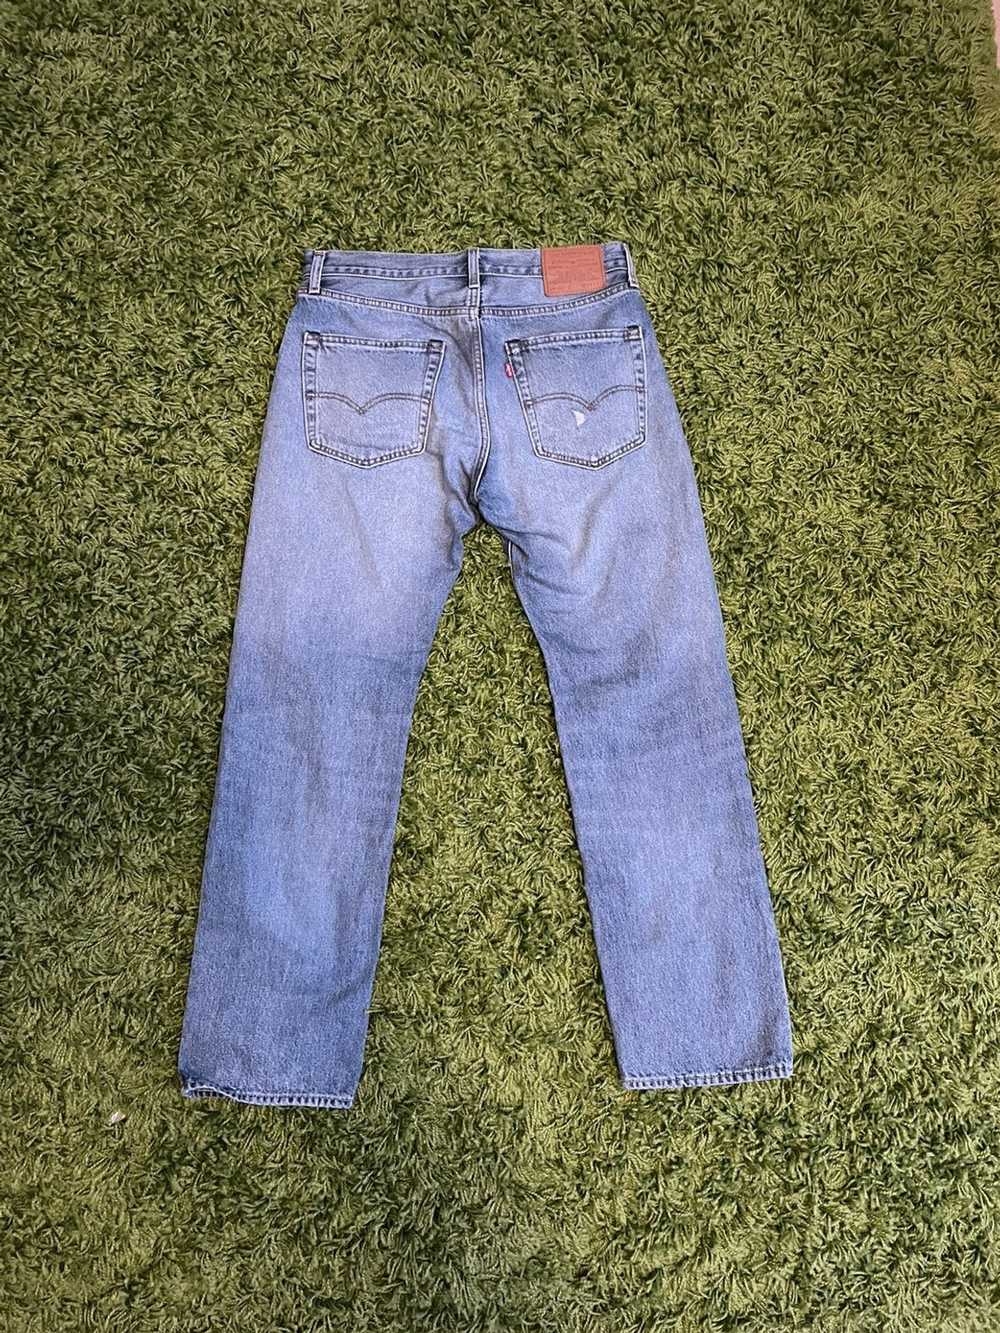 Levi's Vintage Levis 551 Jeans Selvedge Denim - image 2